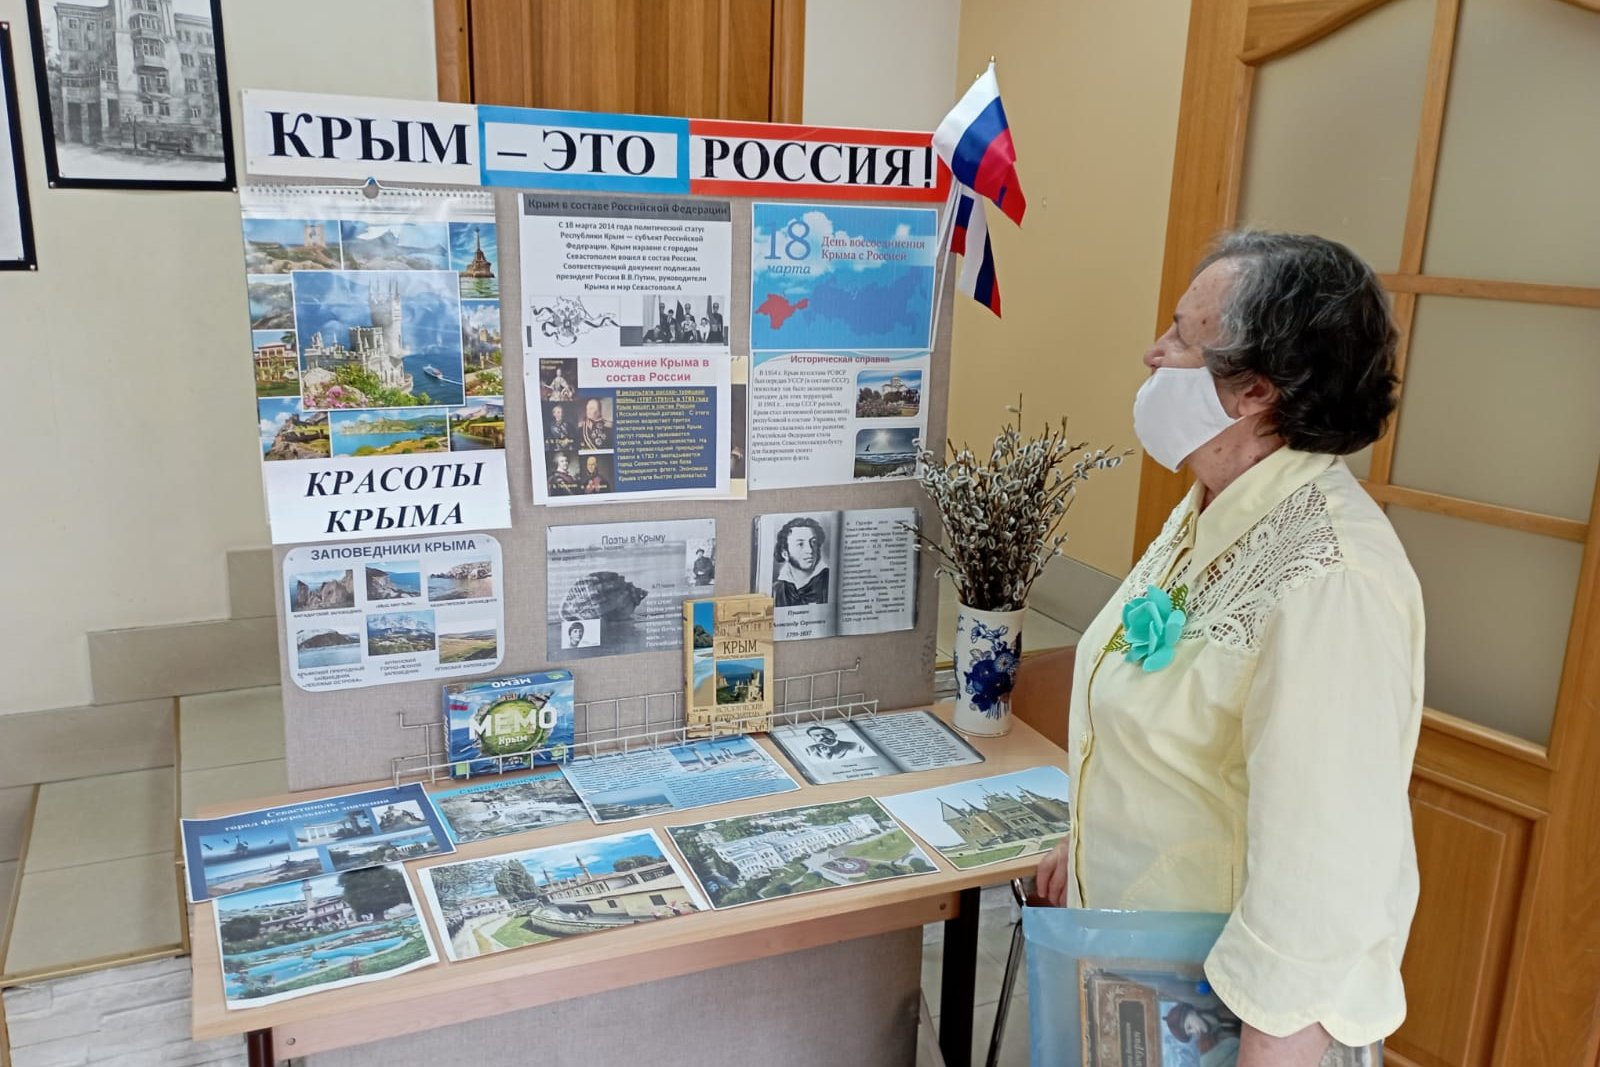 Мероприятия ко дню присоединения крыма. Крым выставка в библиотеке. Название выставки про Крым.